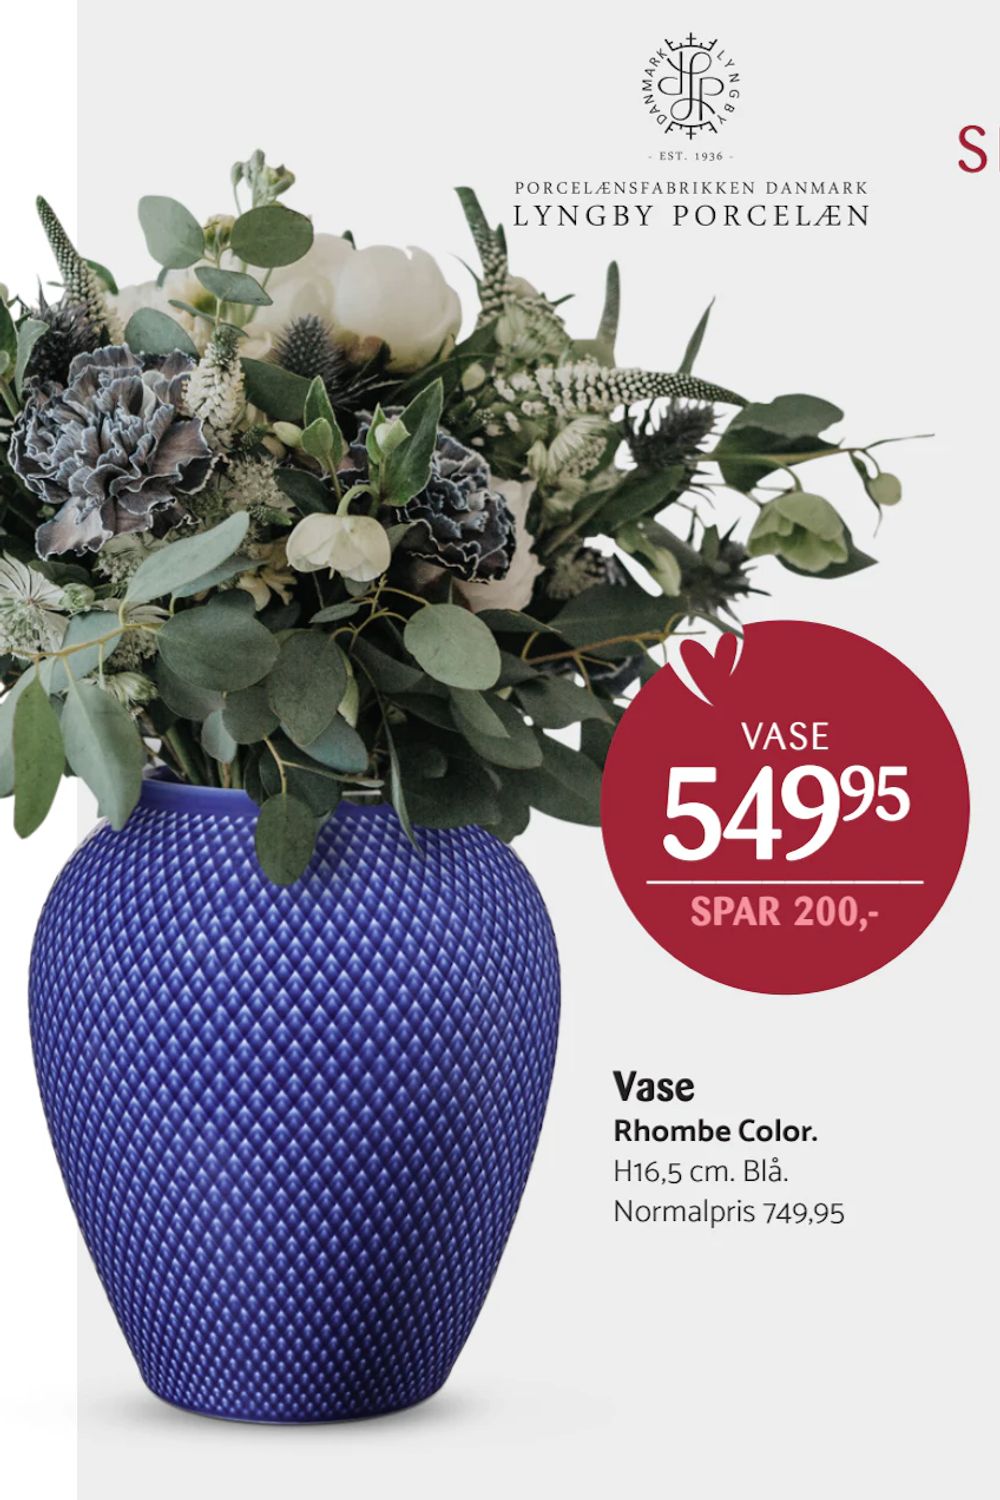 Tilbud på Vase fra Kop & Kande til 549,95 kr.